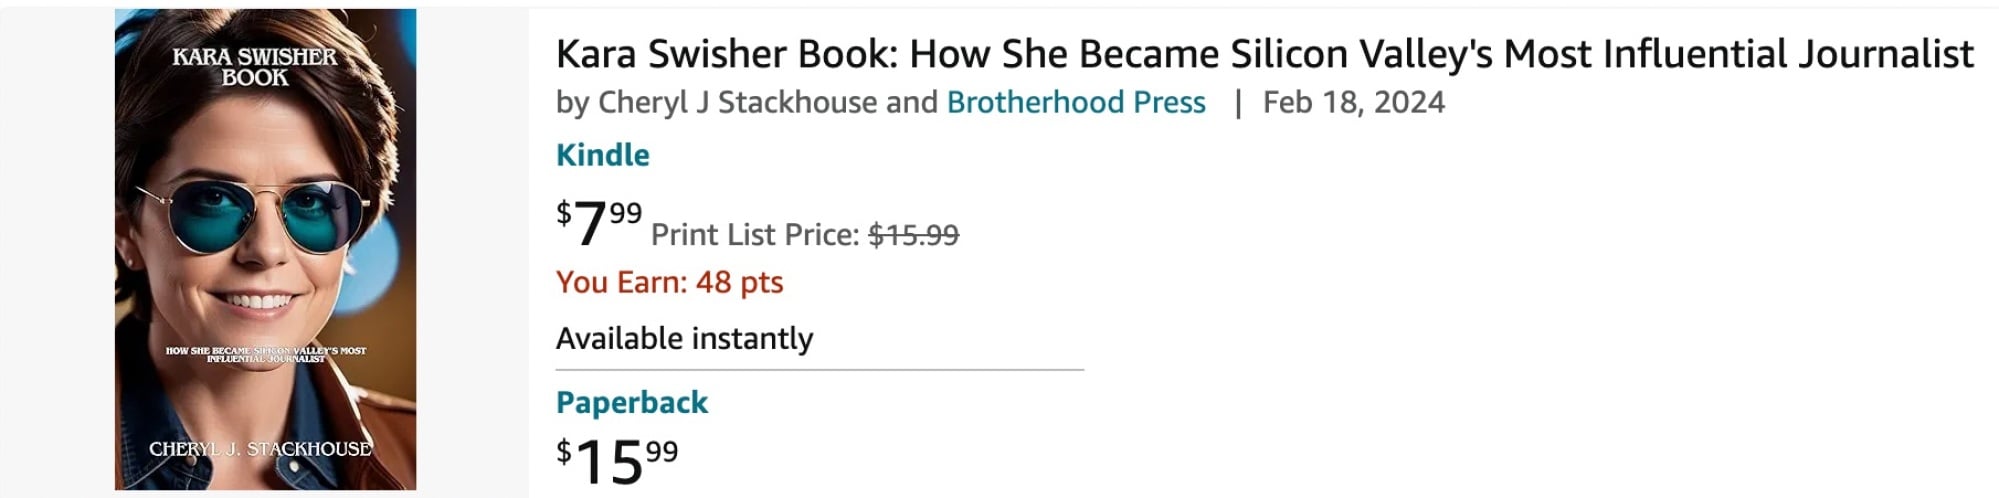 um livro sobre Kara Swisher na Amazon com uma imagem de Swisher gerada por IA